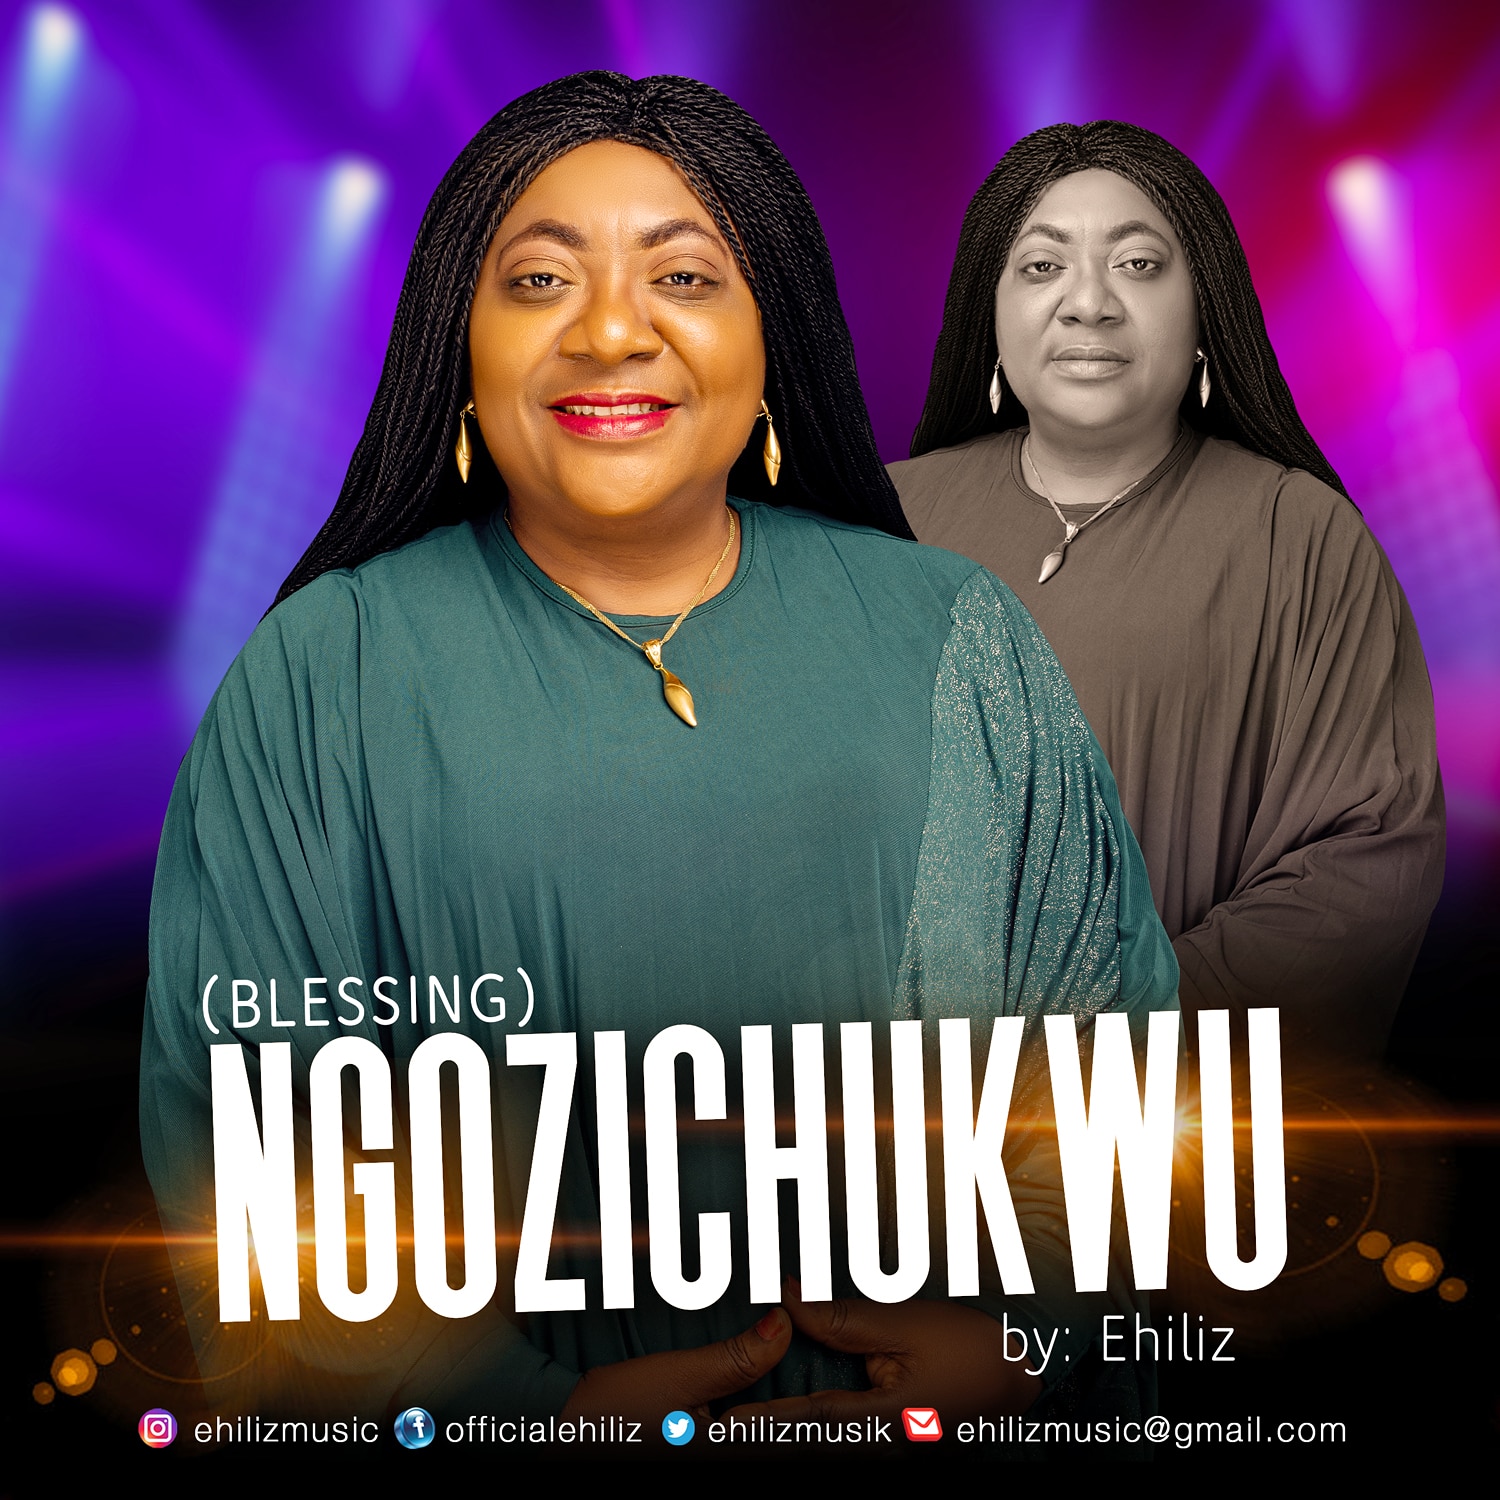 NGOZICHUKWU (Blessing) by Ehiliz